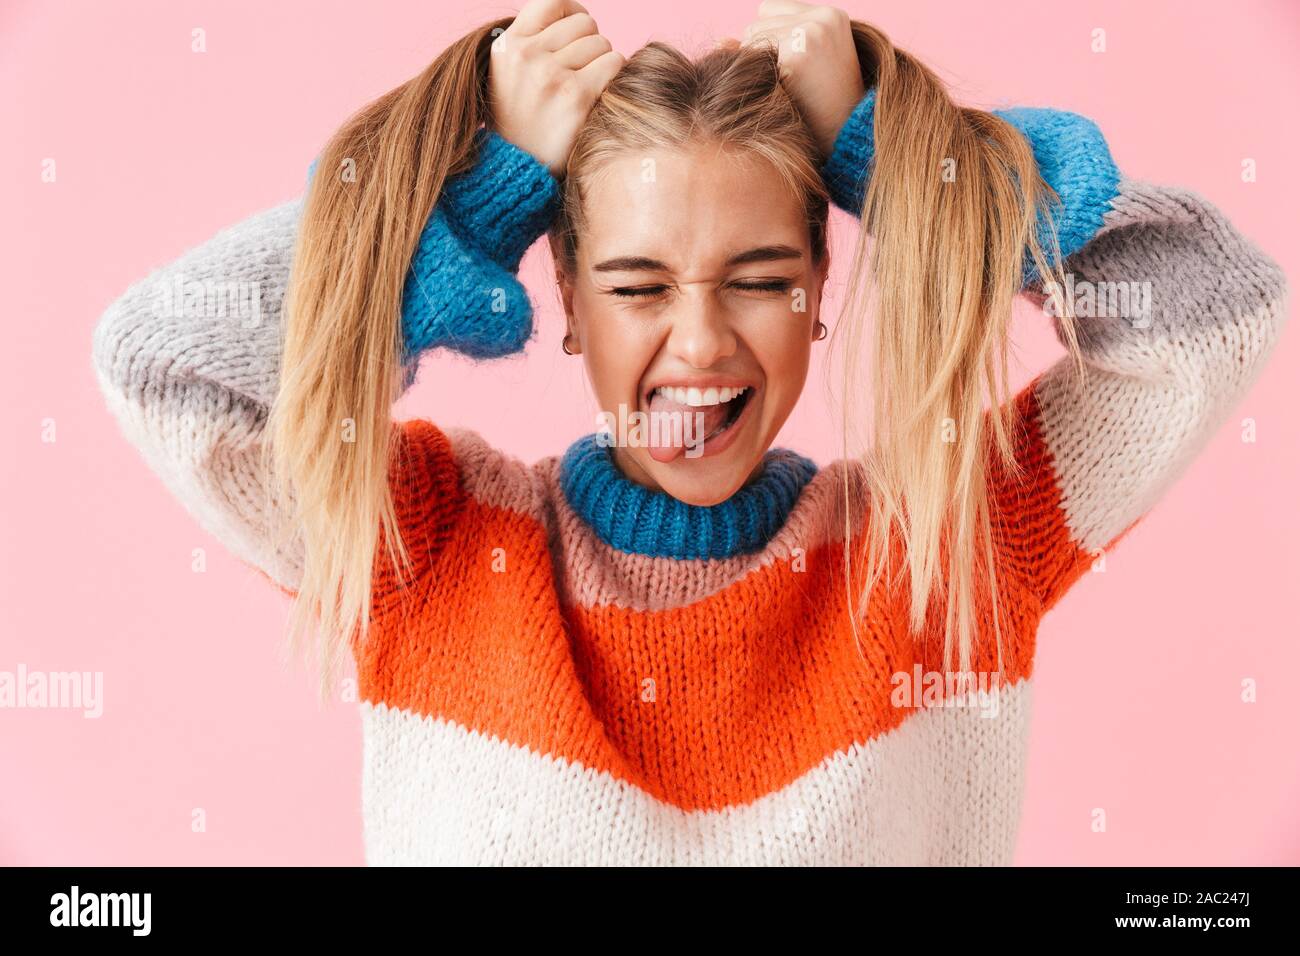 Portrait d'un drôle de jeune fille blonde wearing sweater s'amusant plus isolé sur fond rose, tirant sur ses cheveux Banque D'Images